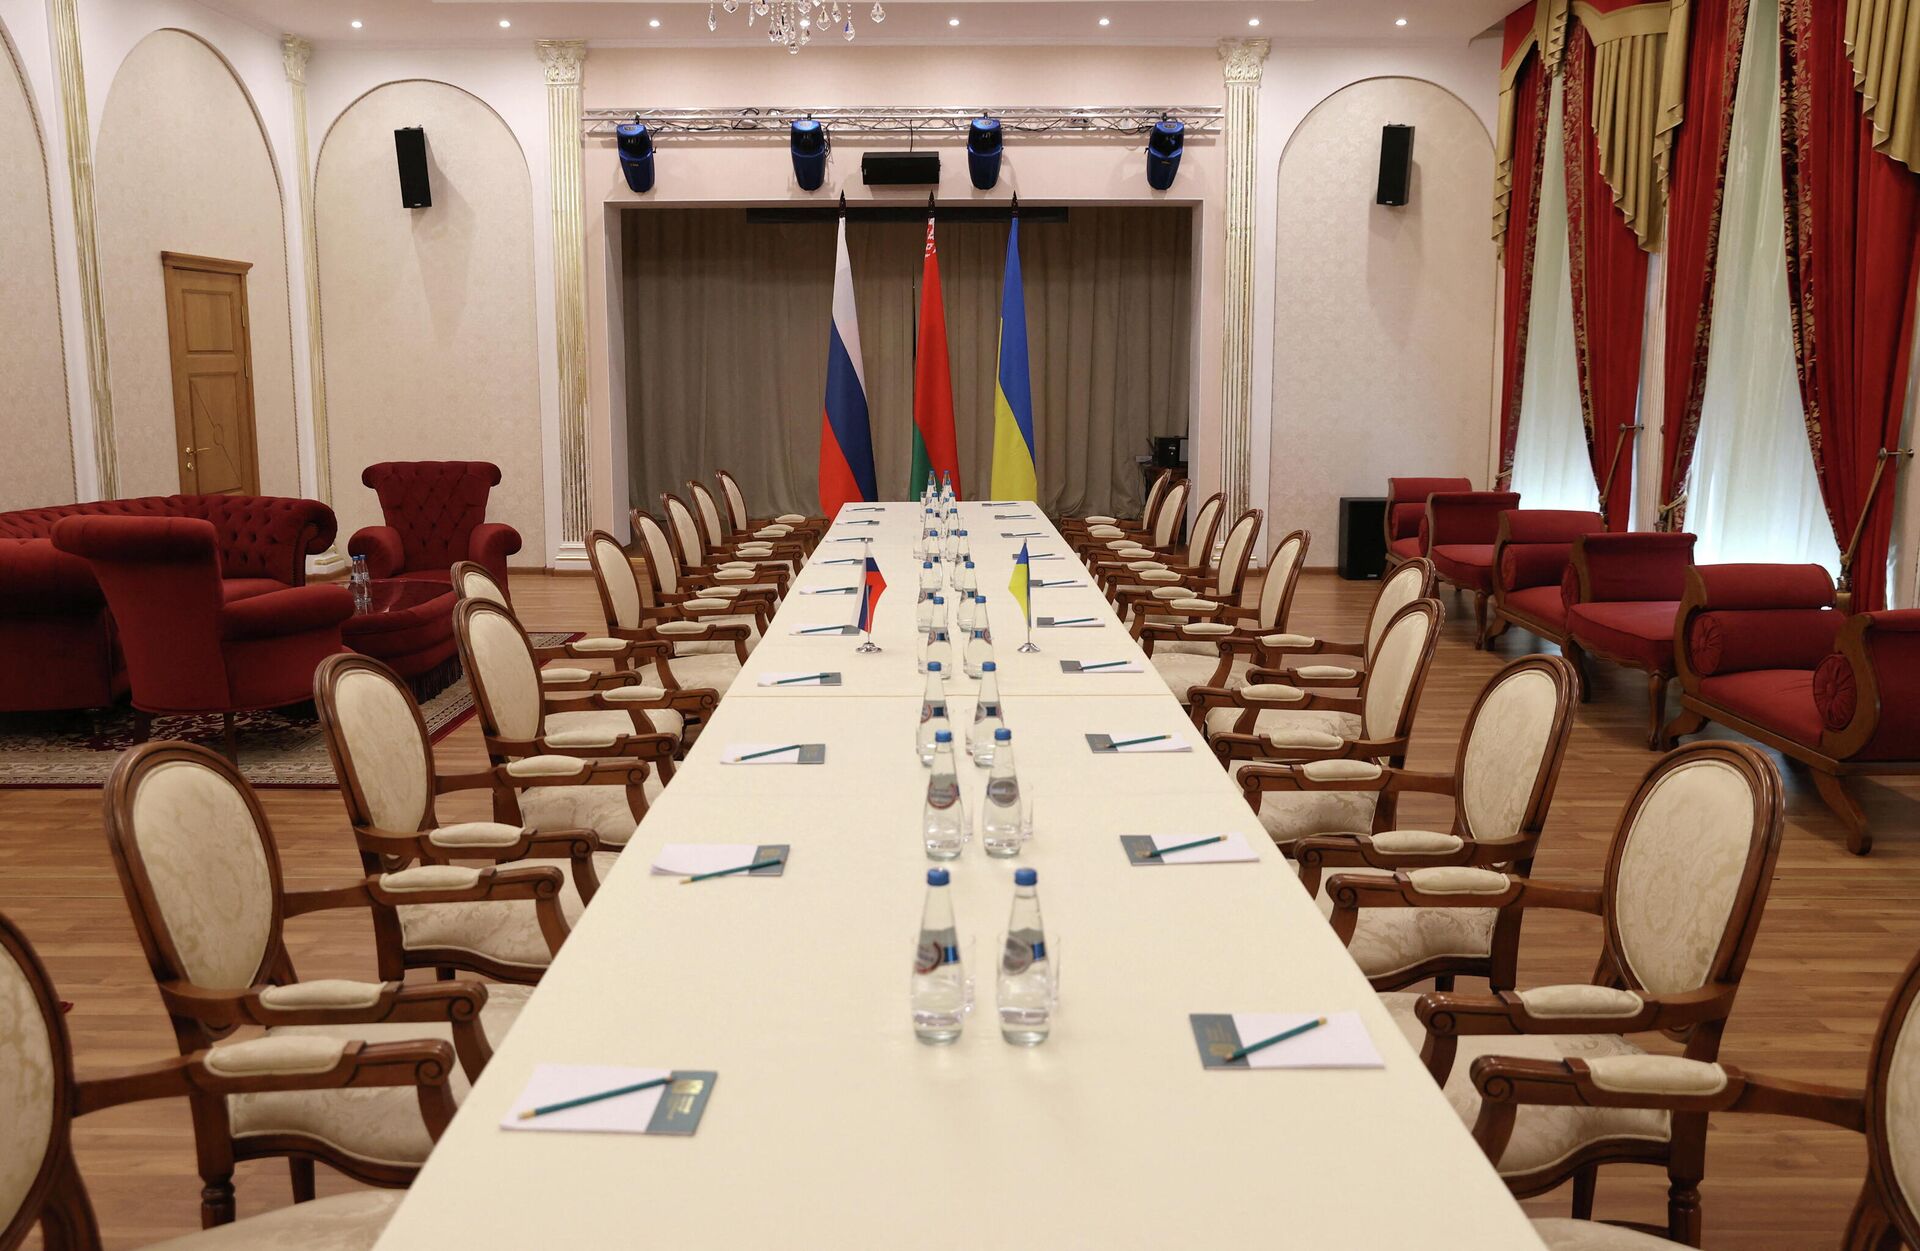 Foto da sala onde será realizada a reunião entre representantes da Rússia e da Ucrânia, Gomel, Belarus, 28 de fevereiro de 2022 - Sputnik Brasil, 1920, 28.02.2022